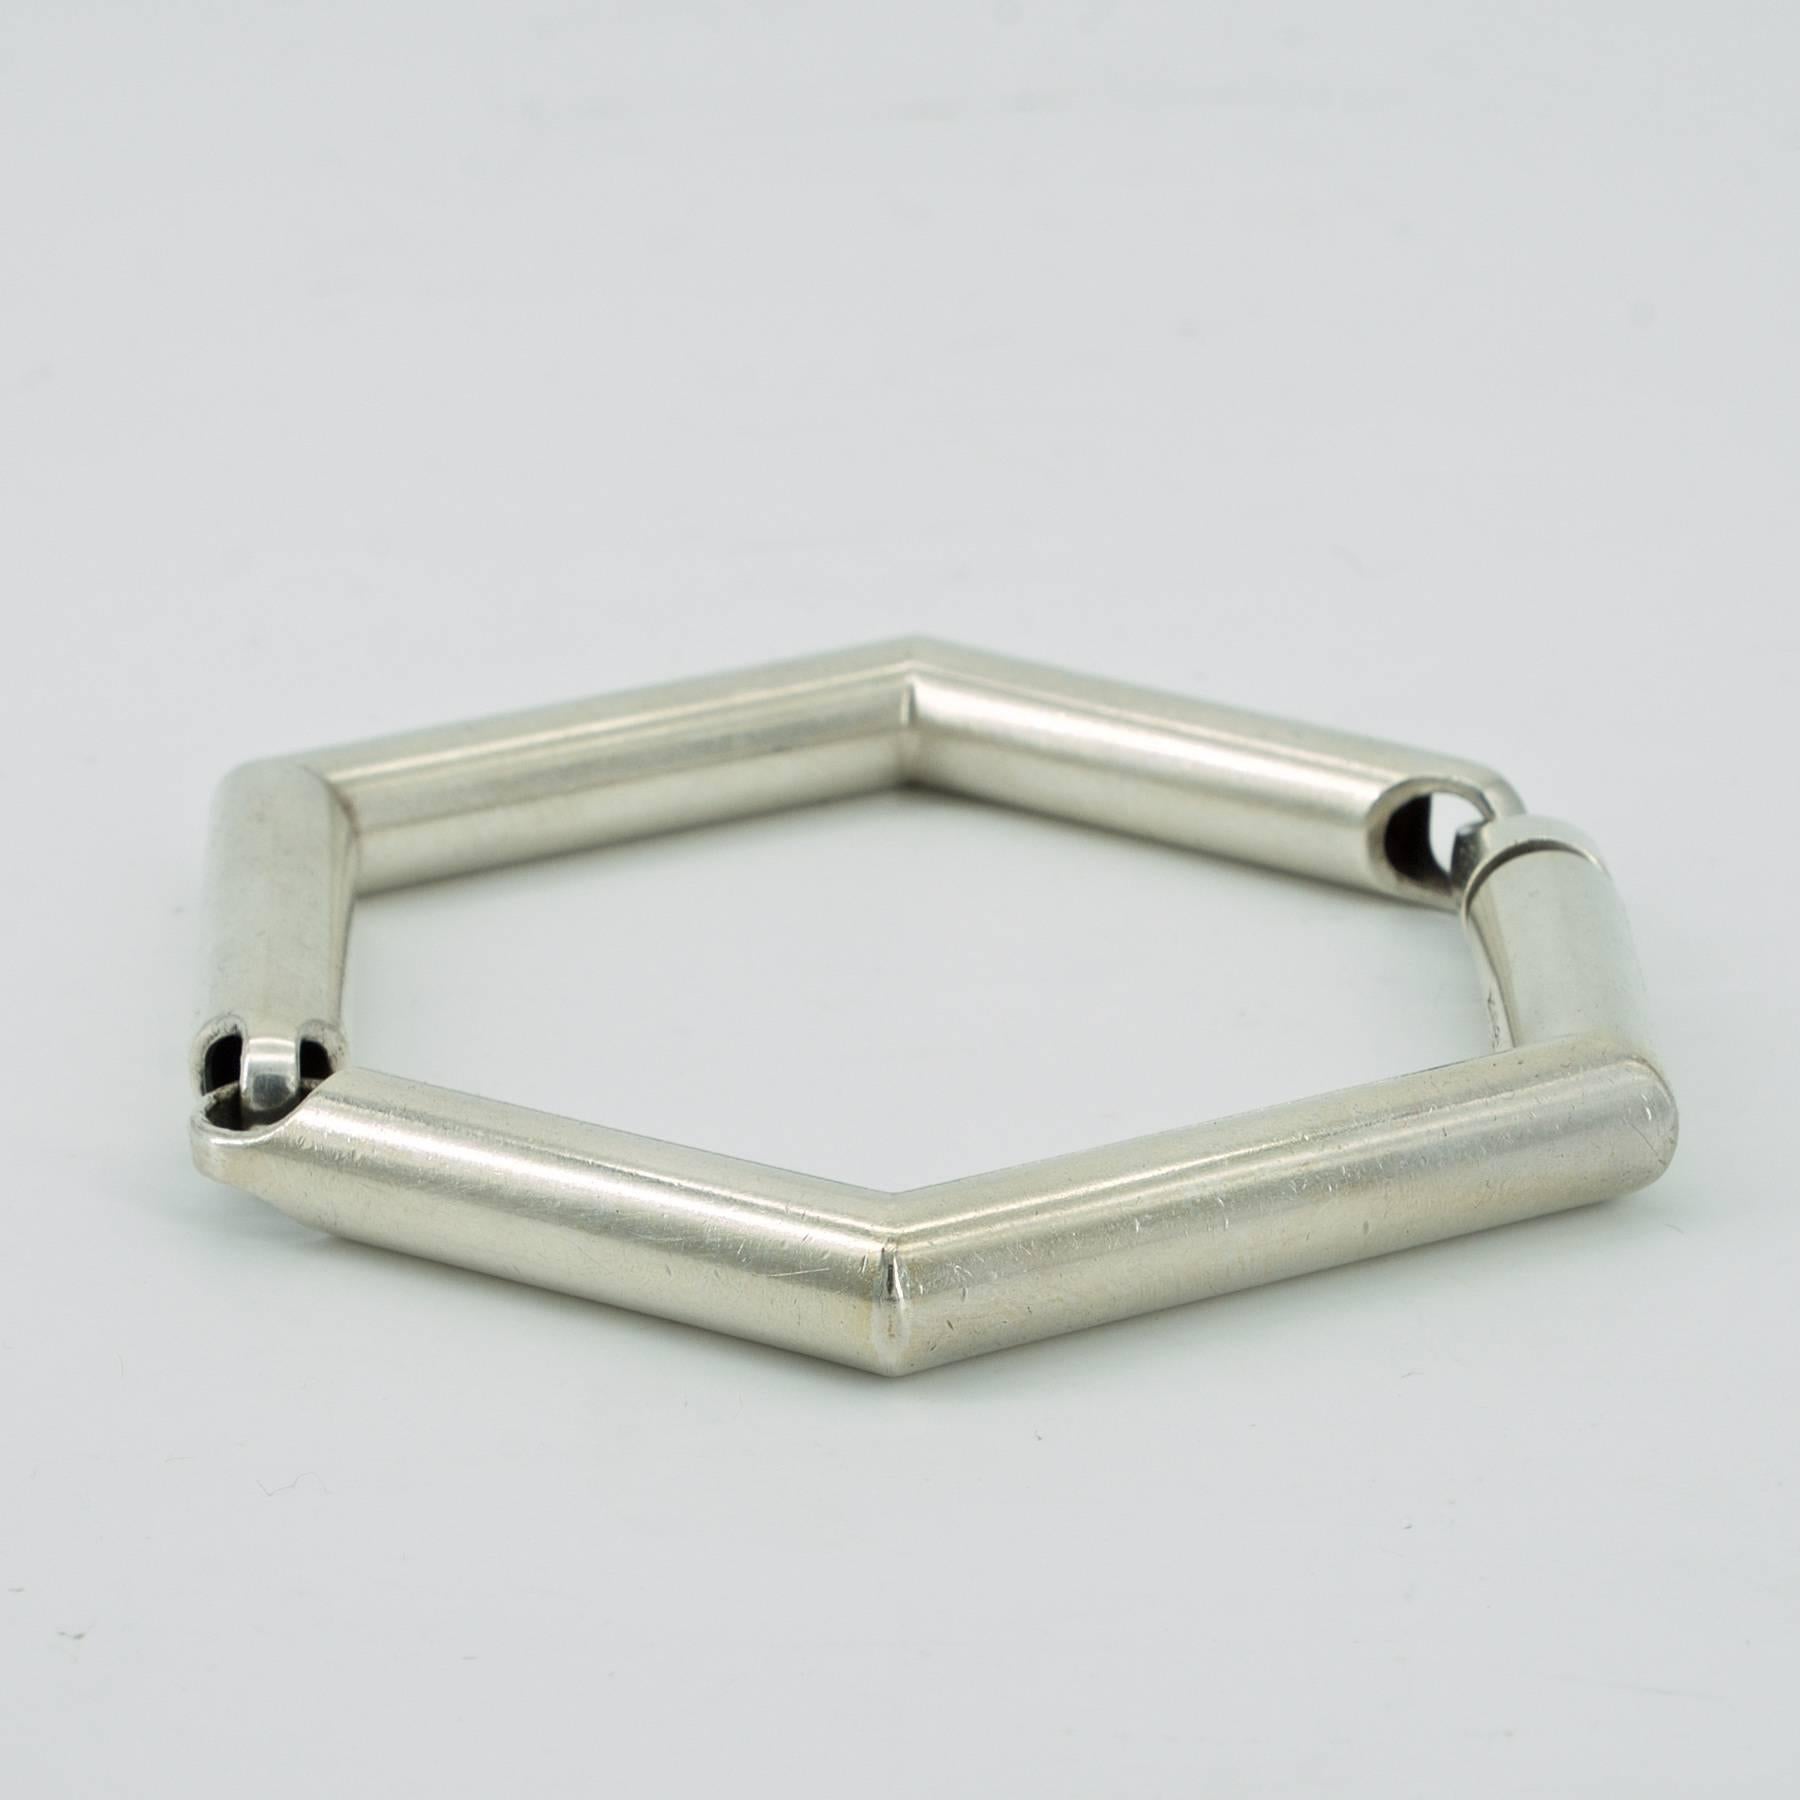 Un bangle hexagonal en argent sterling, rare et très apprécié, de style scandinave minimaliste et moderne des années 1970. Un modèle rarement proposé, polyvalent et confortable, avec un solide fermoir affleurant.
Taille (en position fermée) : 7,3 x